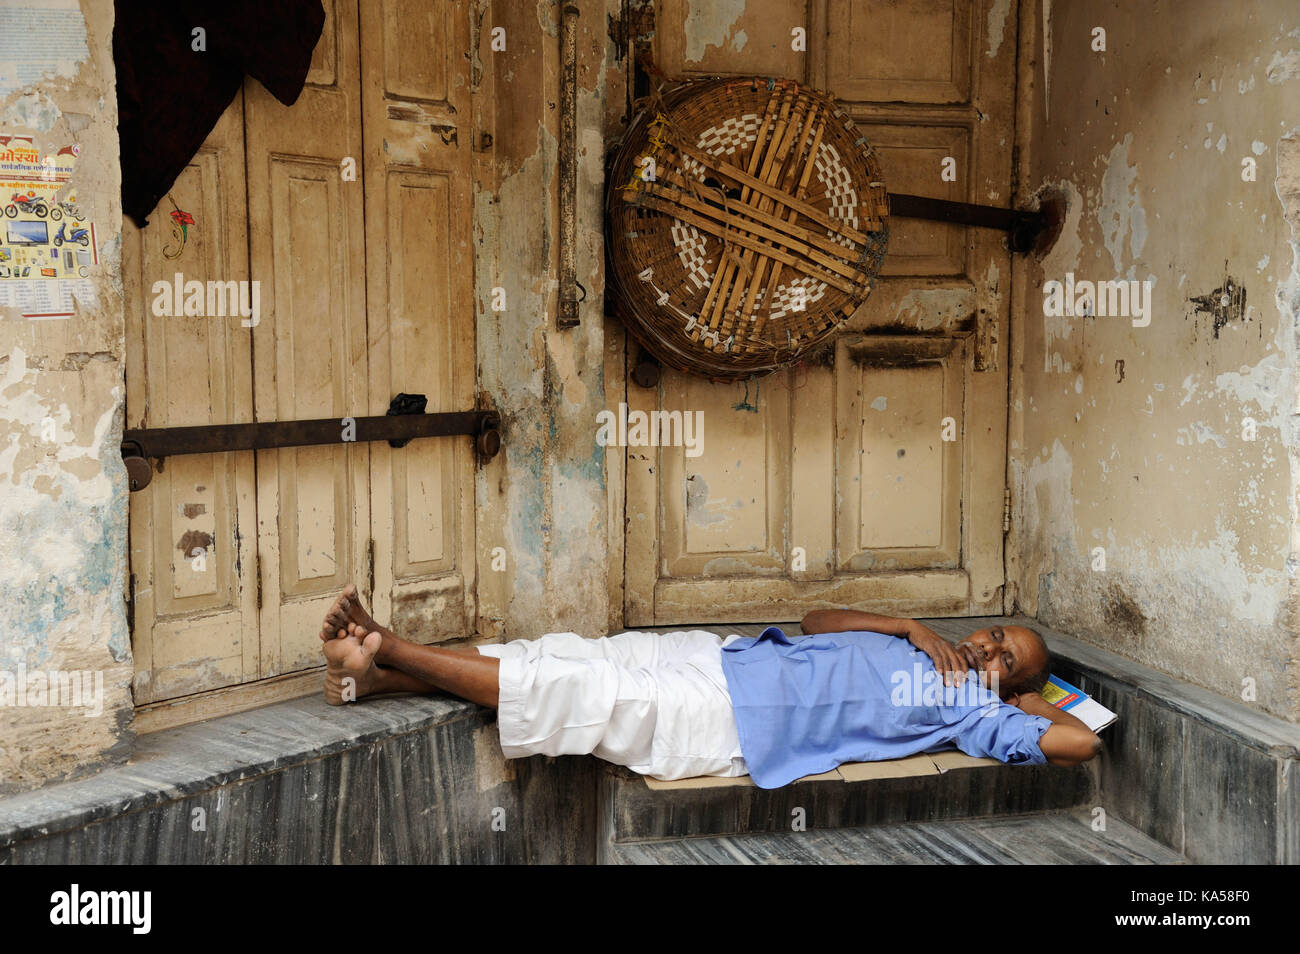 Homeless man sleeping in front of door, mumbai, maharashtra, India, Asia Stock Photo